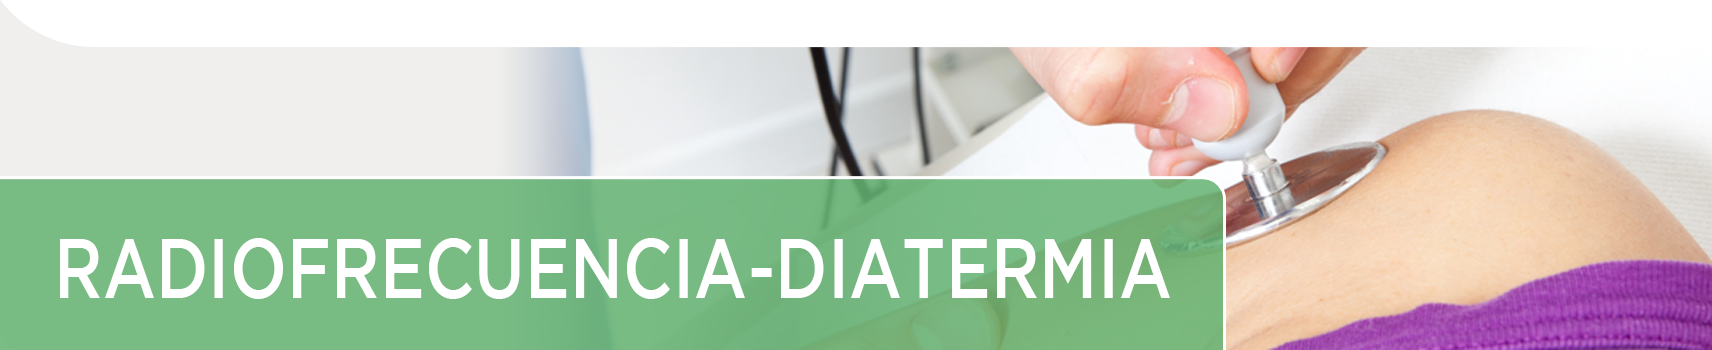 Radiofrecuencia ✔ Diatermia | Tecarterapia en Fisioterapia